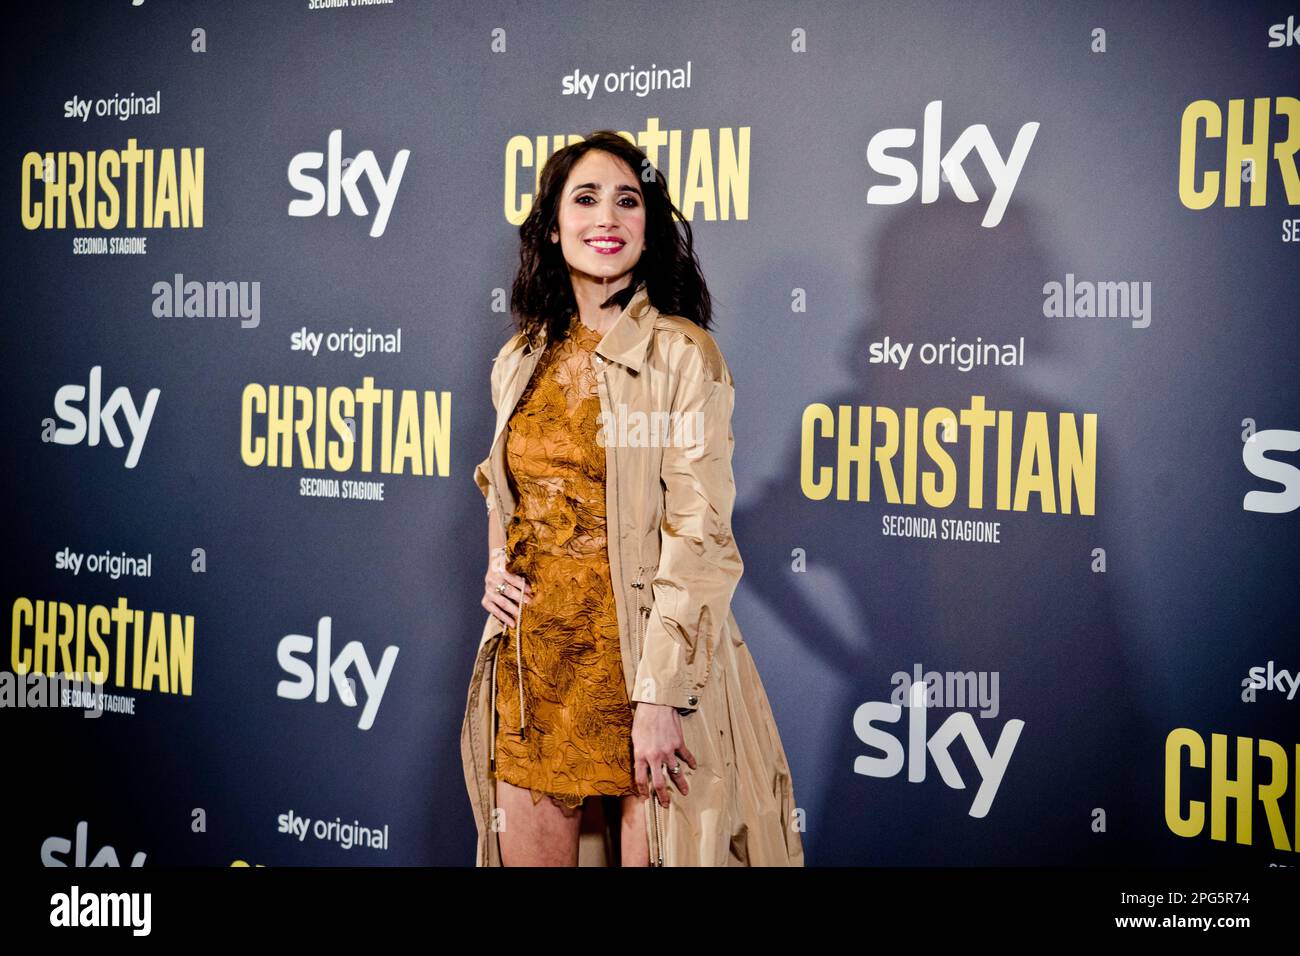 Rome, Italy, 20th March 2023, Silvia D'Amico attends the premiere of 'Christian - seconda stagione' at Cinema Barberini (Photo credits: Giovanna Onofr Stock Photo